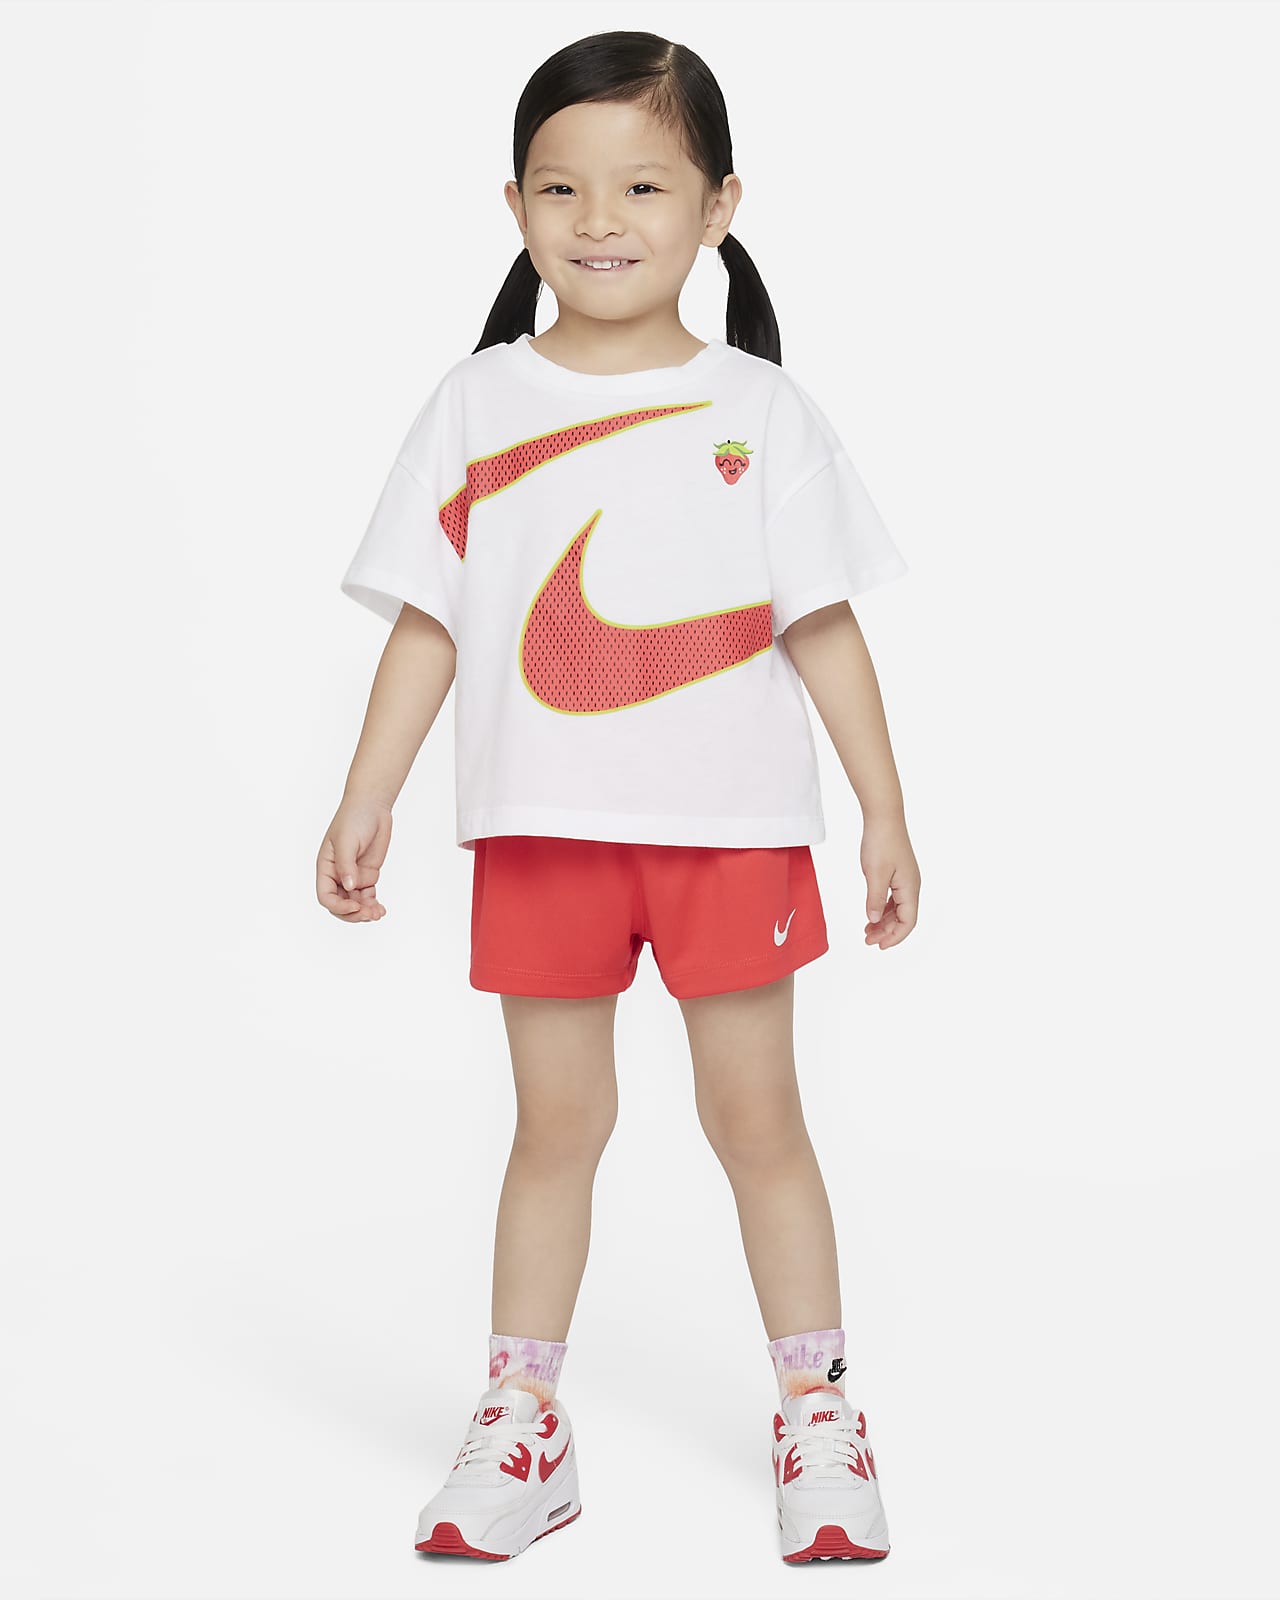 Completo t-shirt e shorts Nike – Bimbi piccoli